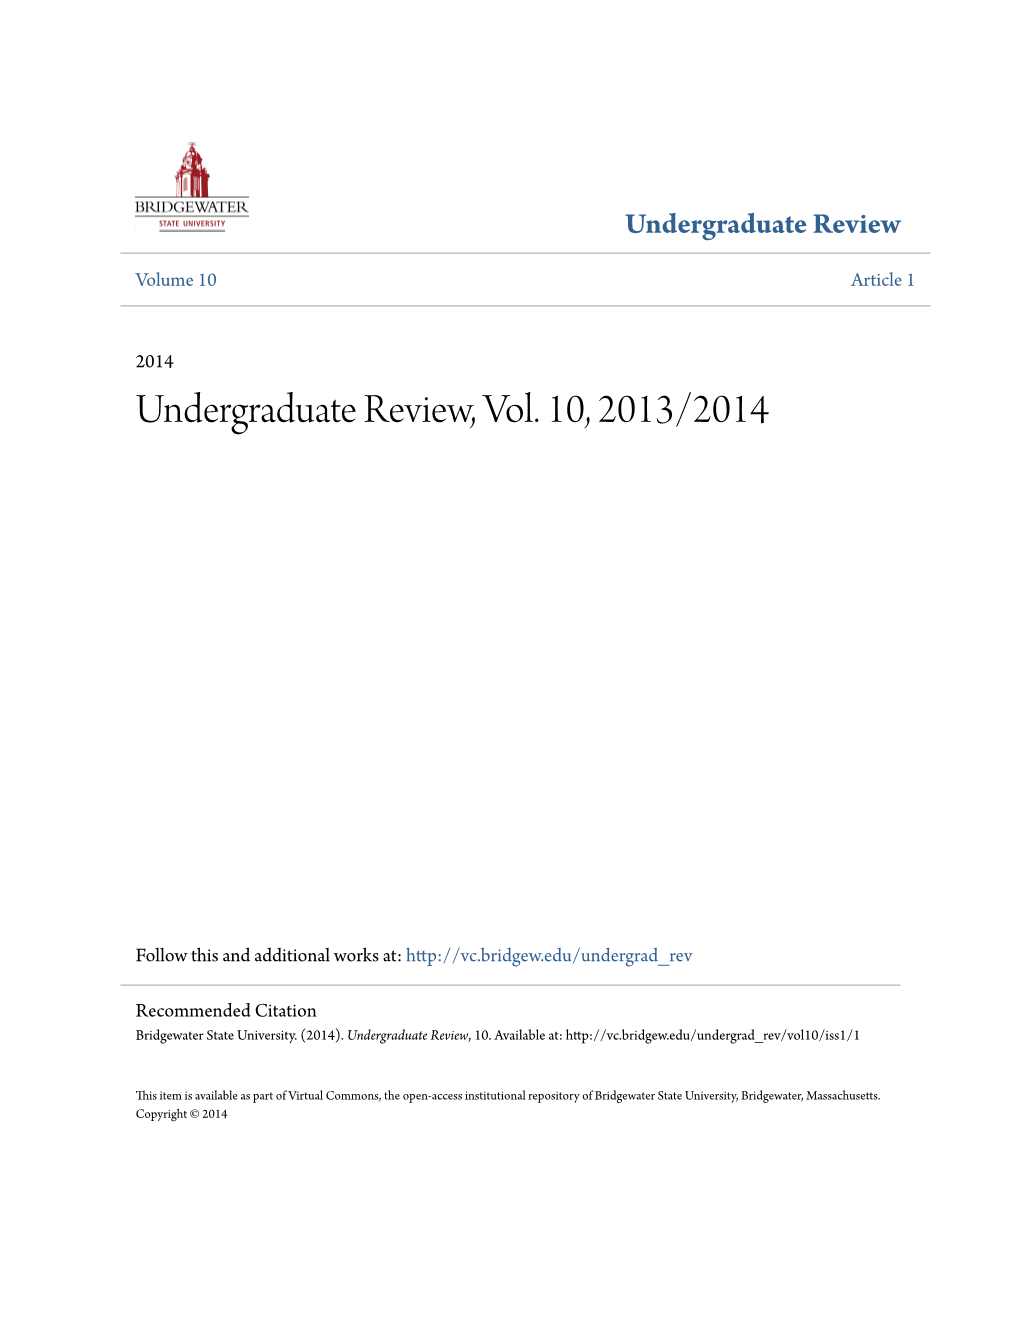 Undergraduate Review, Vol. 10, 2013/2014